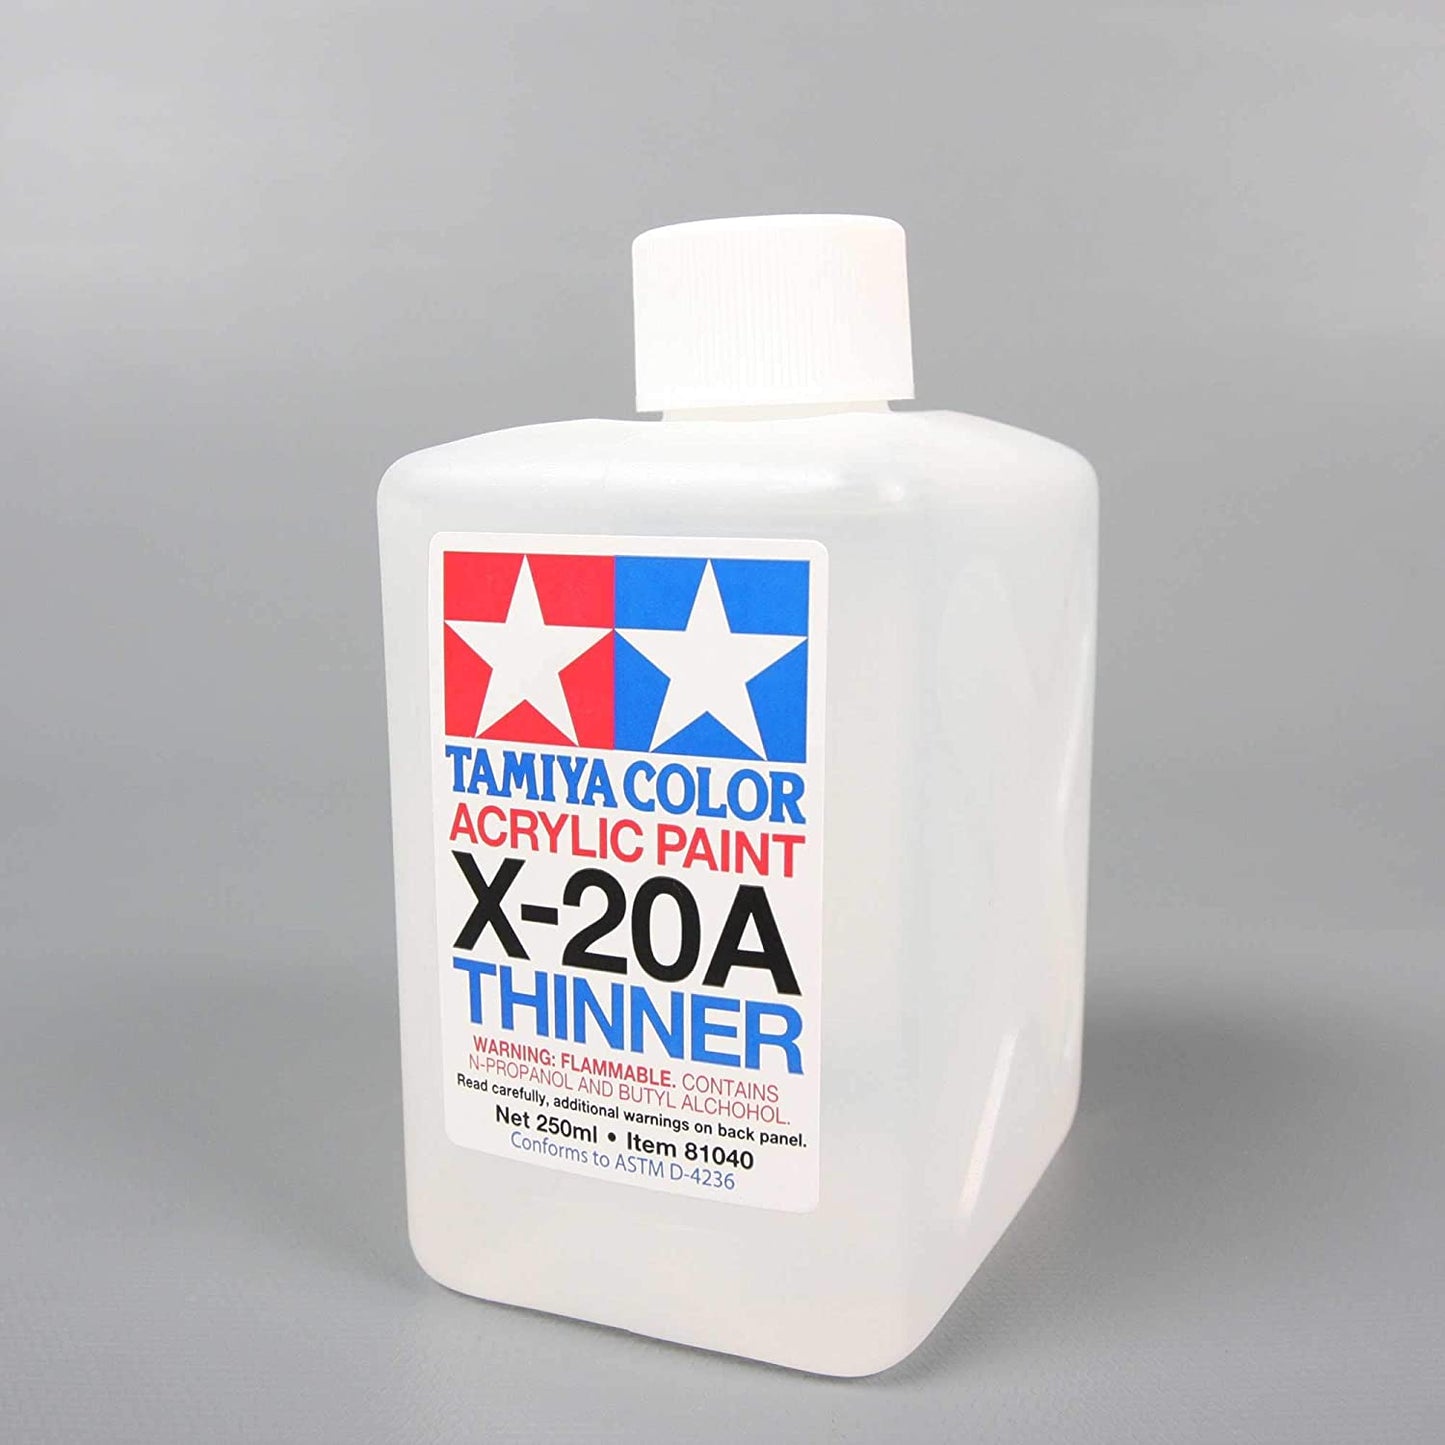 Tamiya X-20A Acrylic Paint Thinner (250ml)